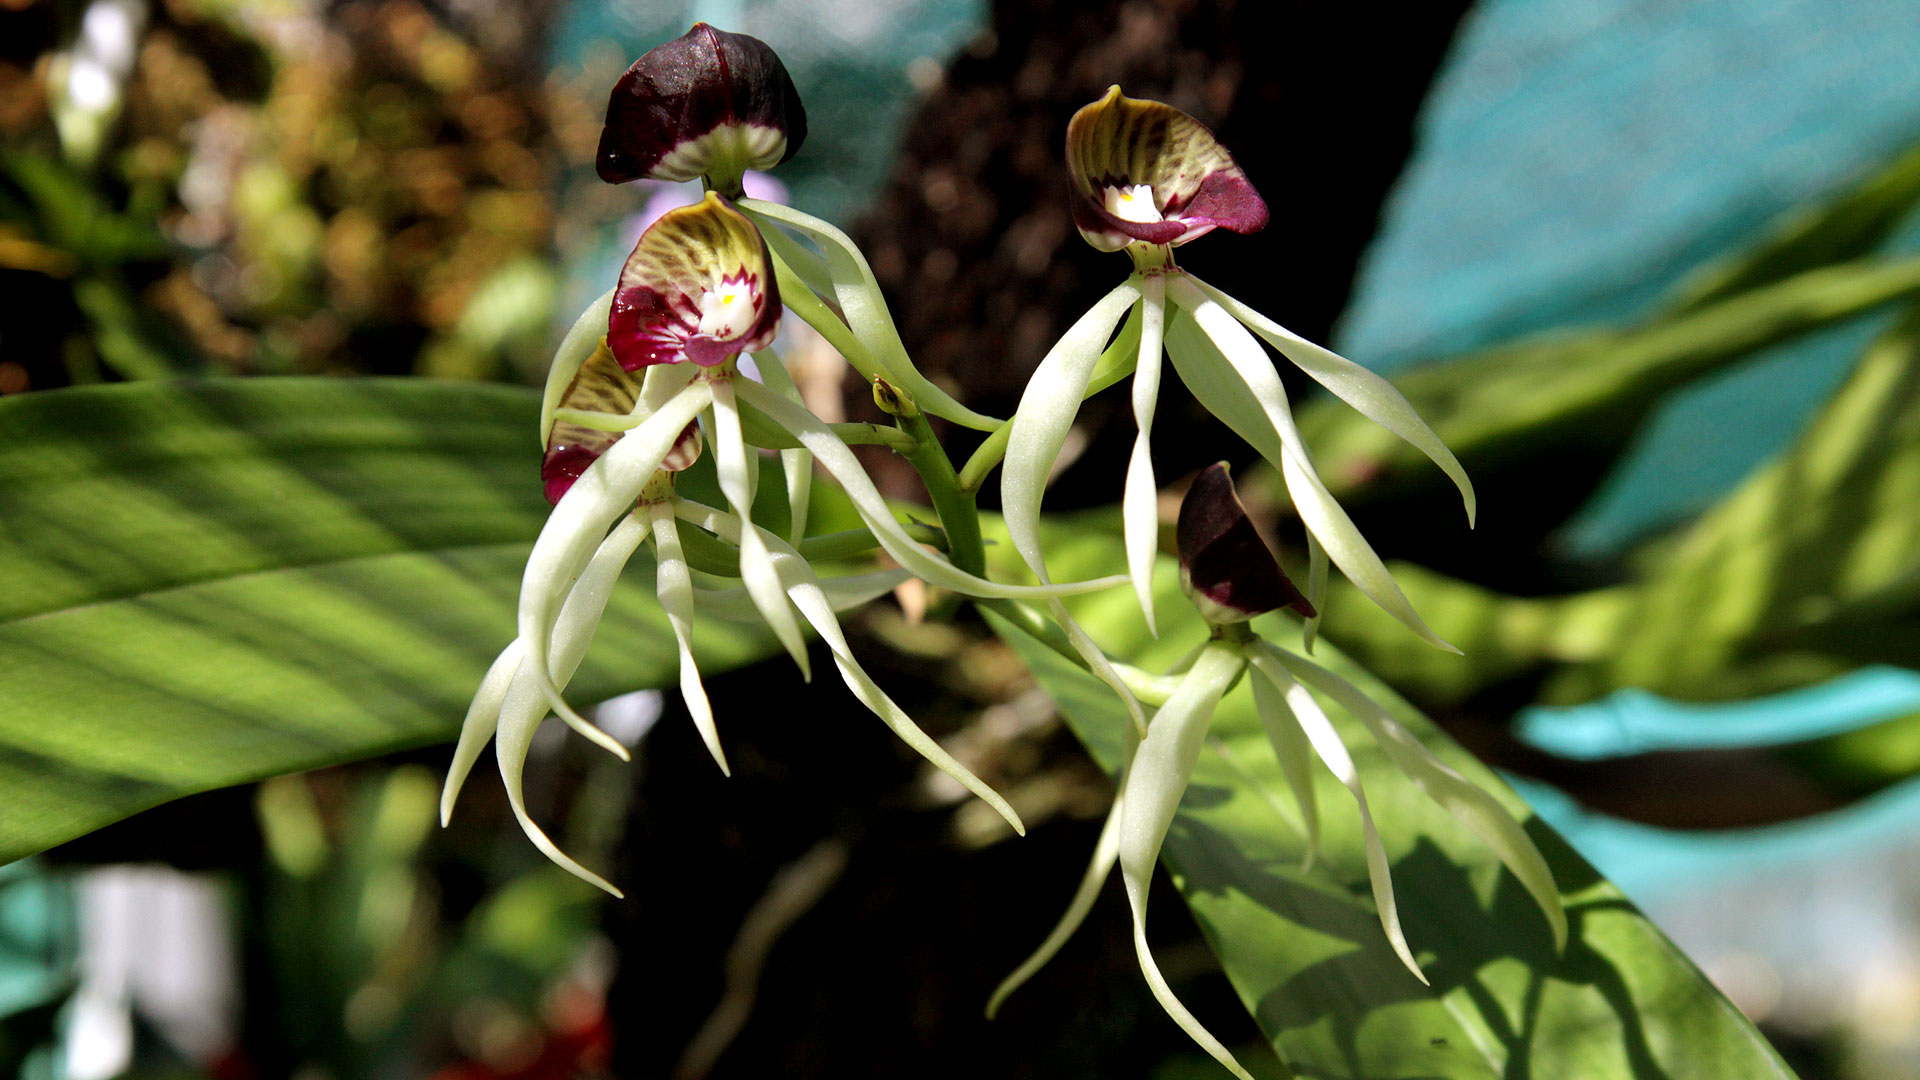 L'orchidée noire ou Anacheilium cochleatum, la fleur nationale du Belize